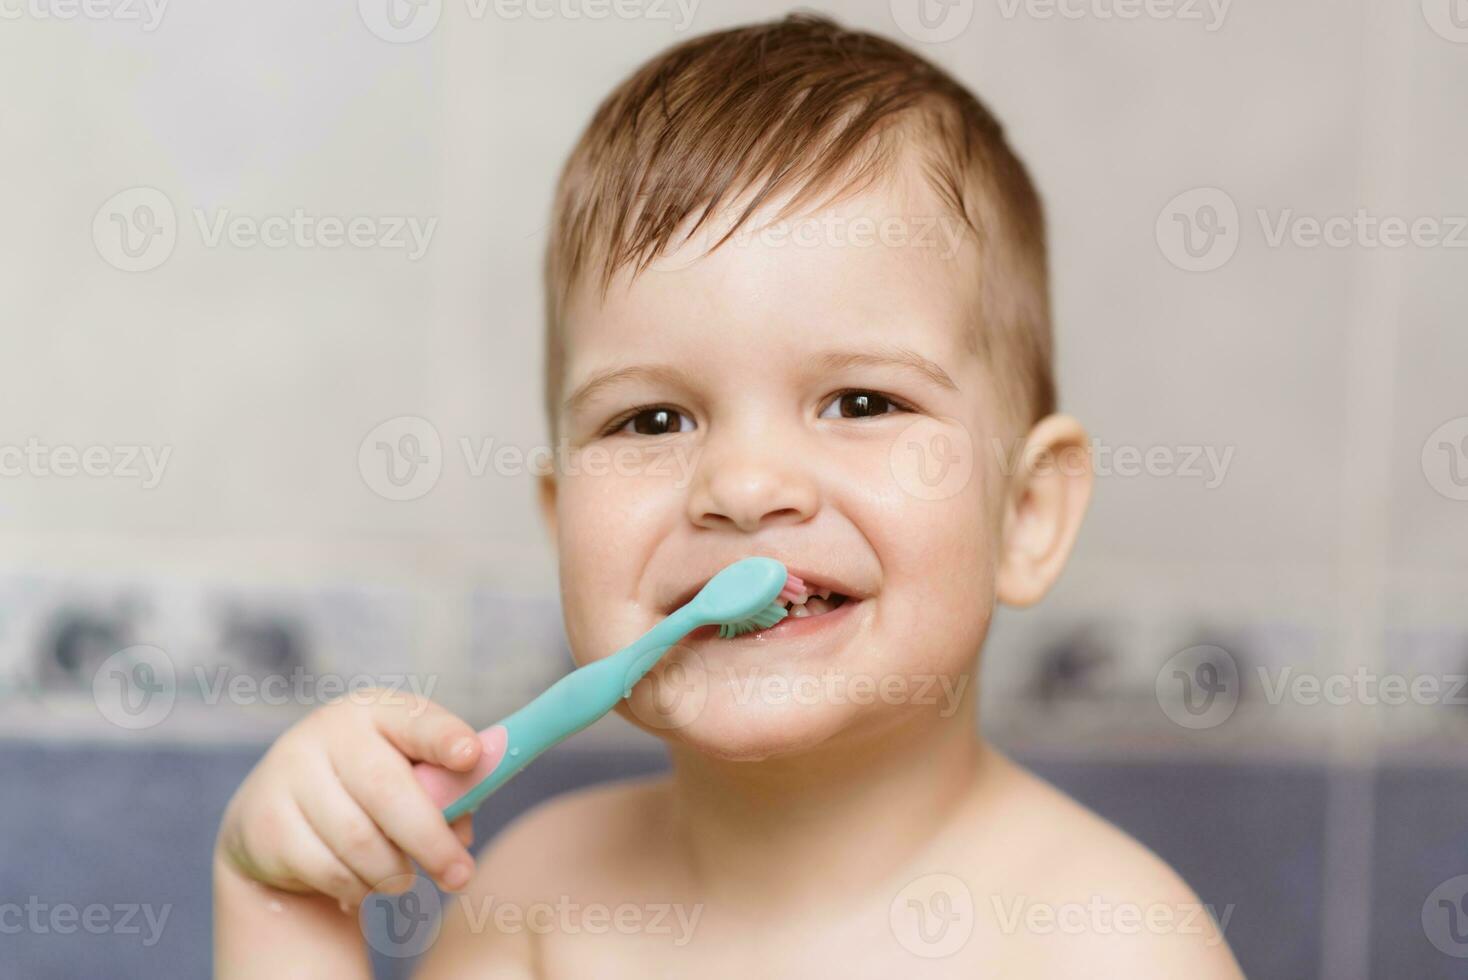 encantador bebé cepillado su dientes con un cepillo de dientes en el baño foto